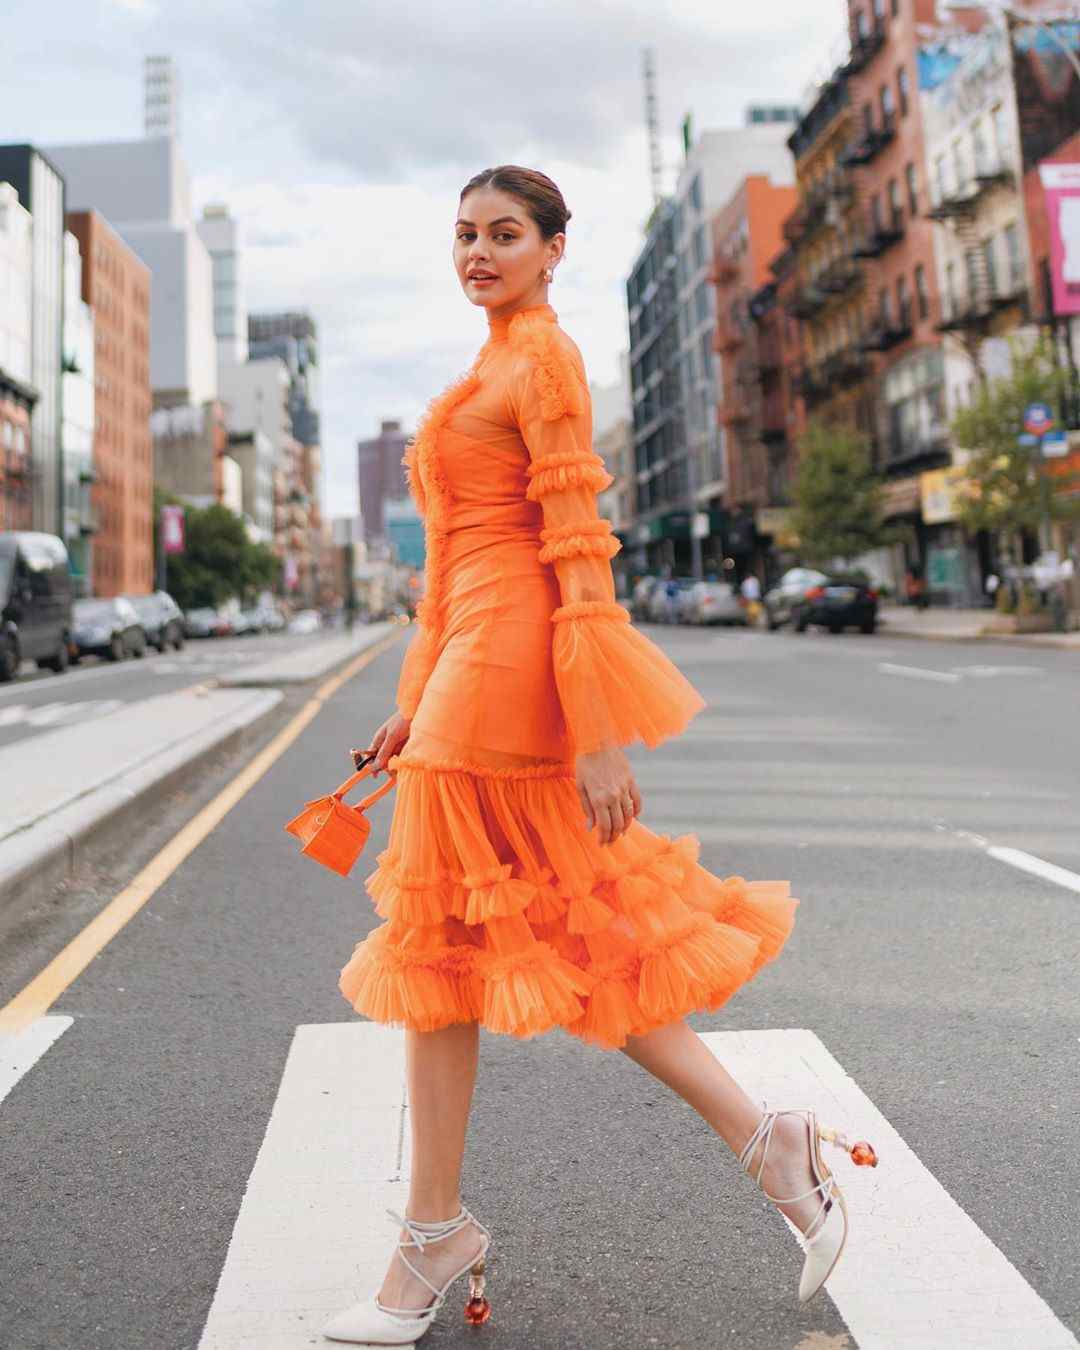 Mandarin Orange kombinieren Kleider Herbst Outfits